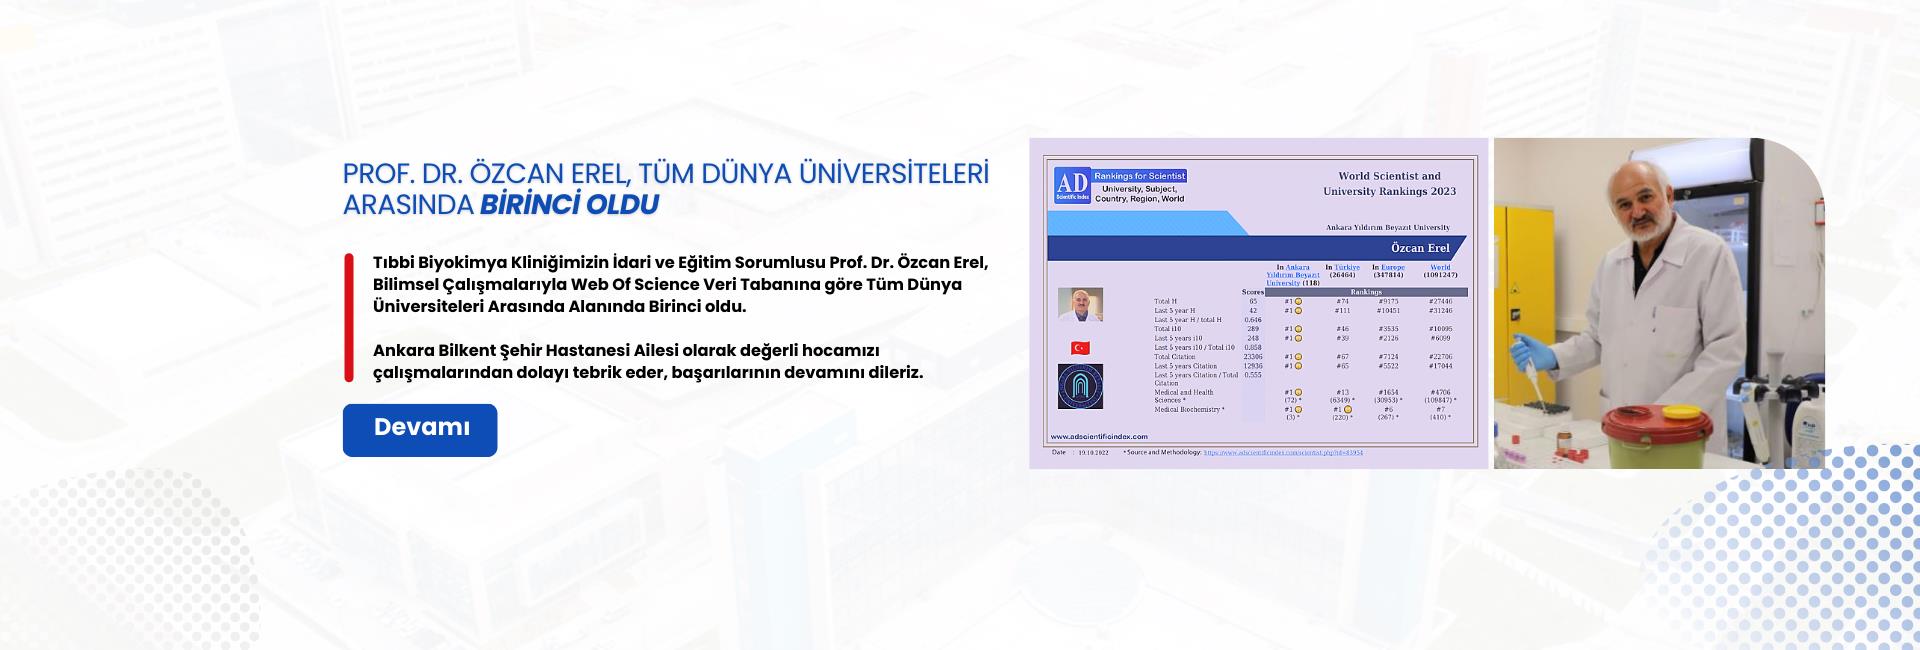 Tıbbi Biyokimya Kliniğimizin İdari ve Eğitim Sorumlusu Prof. Dr. Özcan Erel, Bilimsel Çalışmalarıyla Tüm Dünya Üniversiteleri arasında alanında birinci oldu.